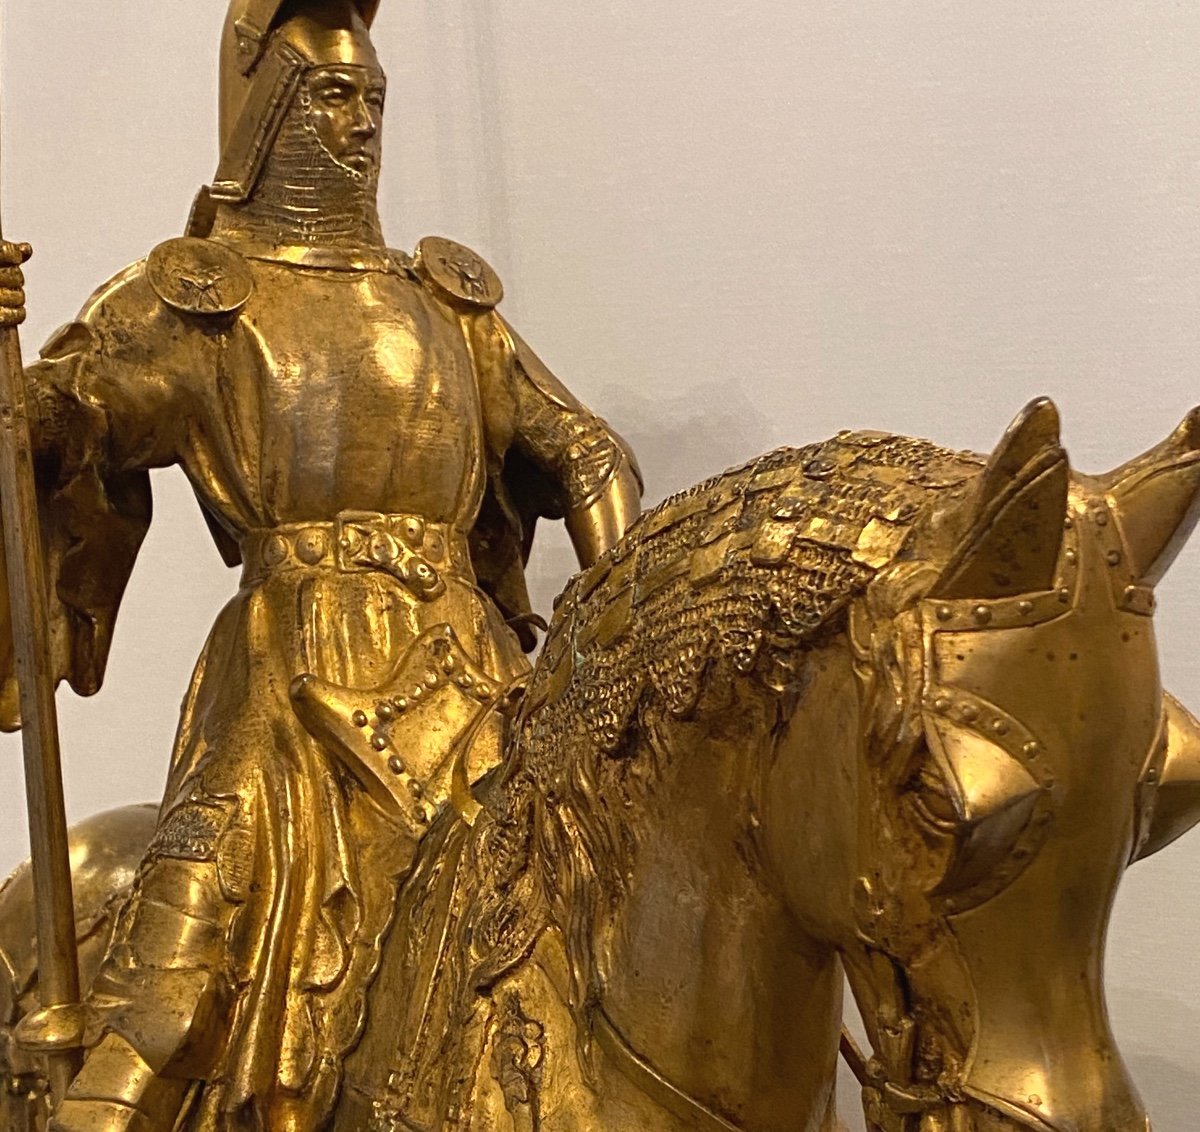 Bronze      Equestre DorÉ      Louis 1er  Duc d'OrlÉans    Par     E.   Fremiet   1824 -1910  Barbedienne fonderie